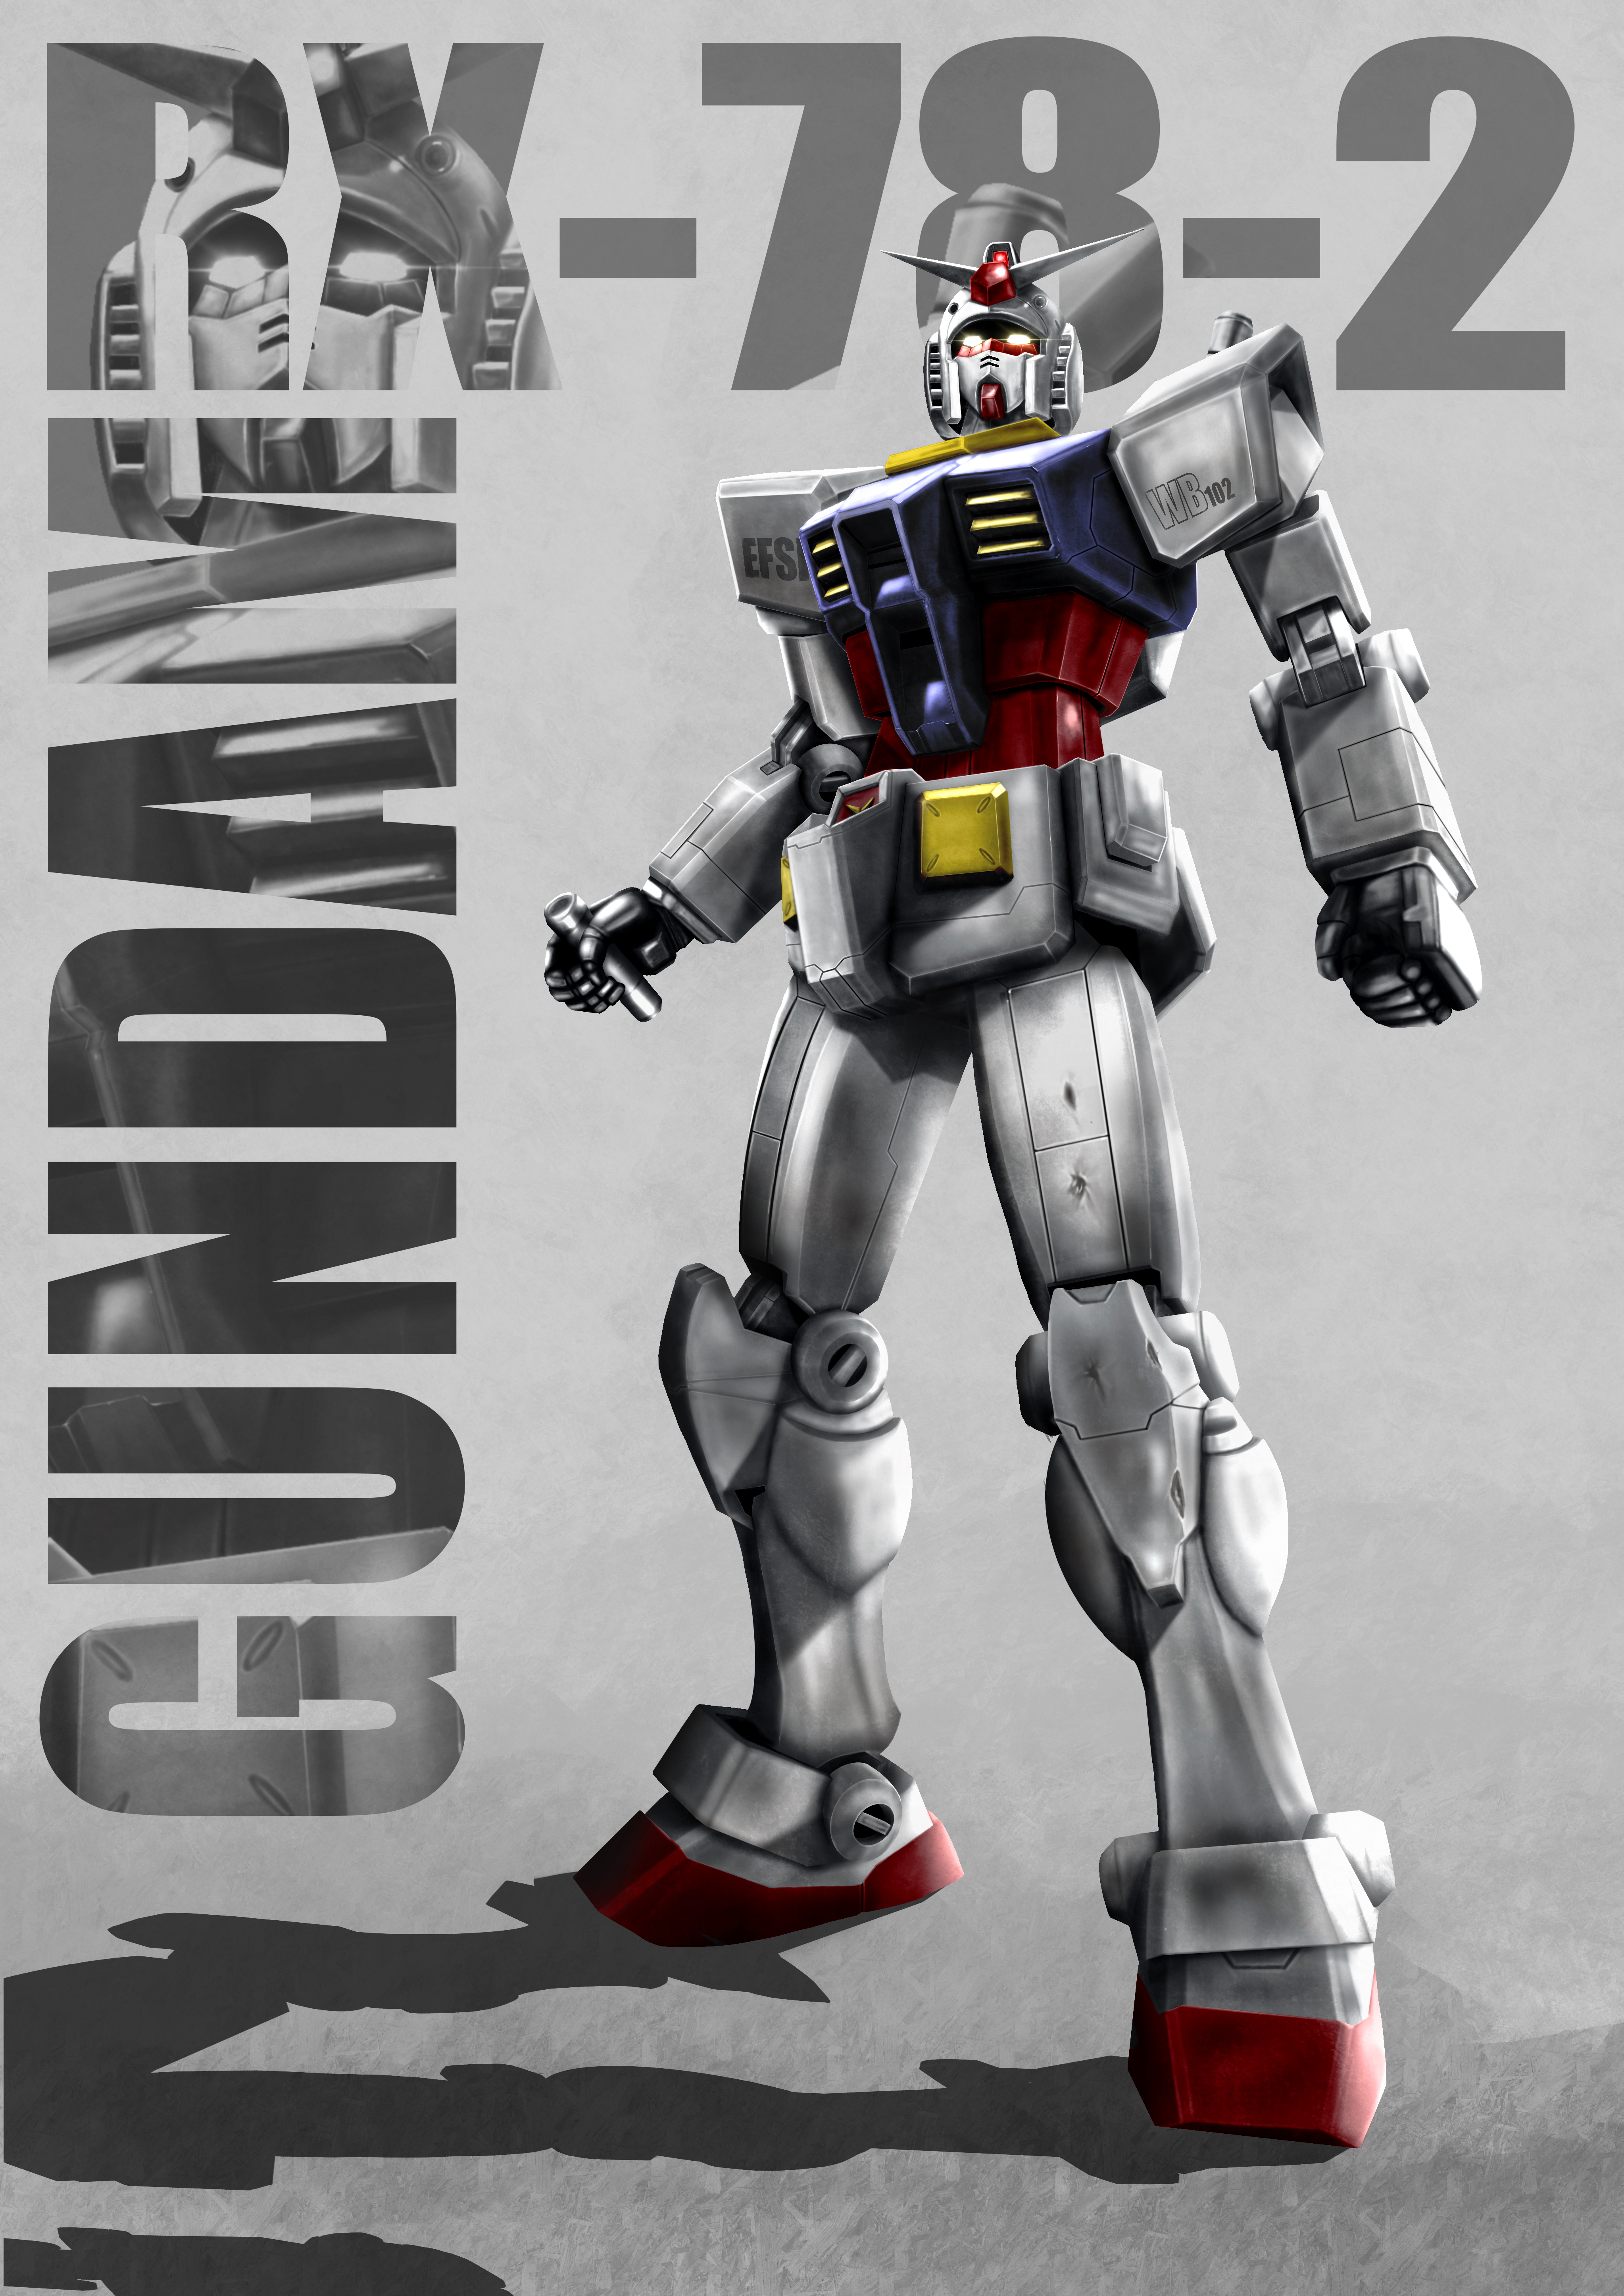 Anime Mechs Super Robot Taisen Mobile Suit Gundam RX 78 Gundam Gundam Artwork Digital Art Fan Art 4093x5787